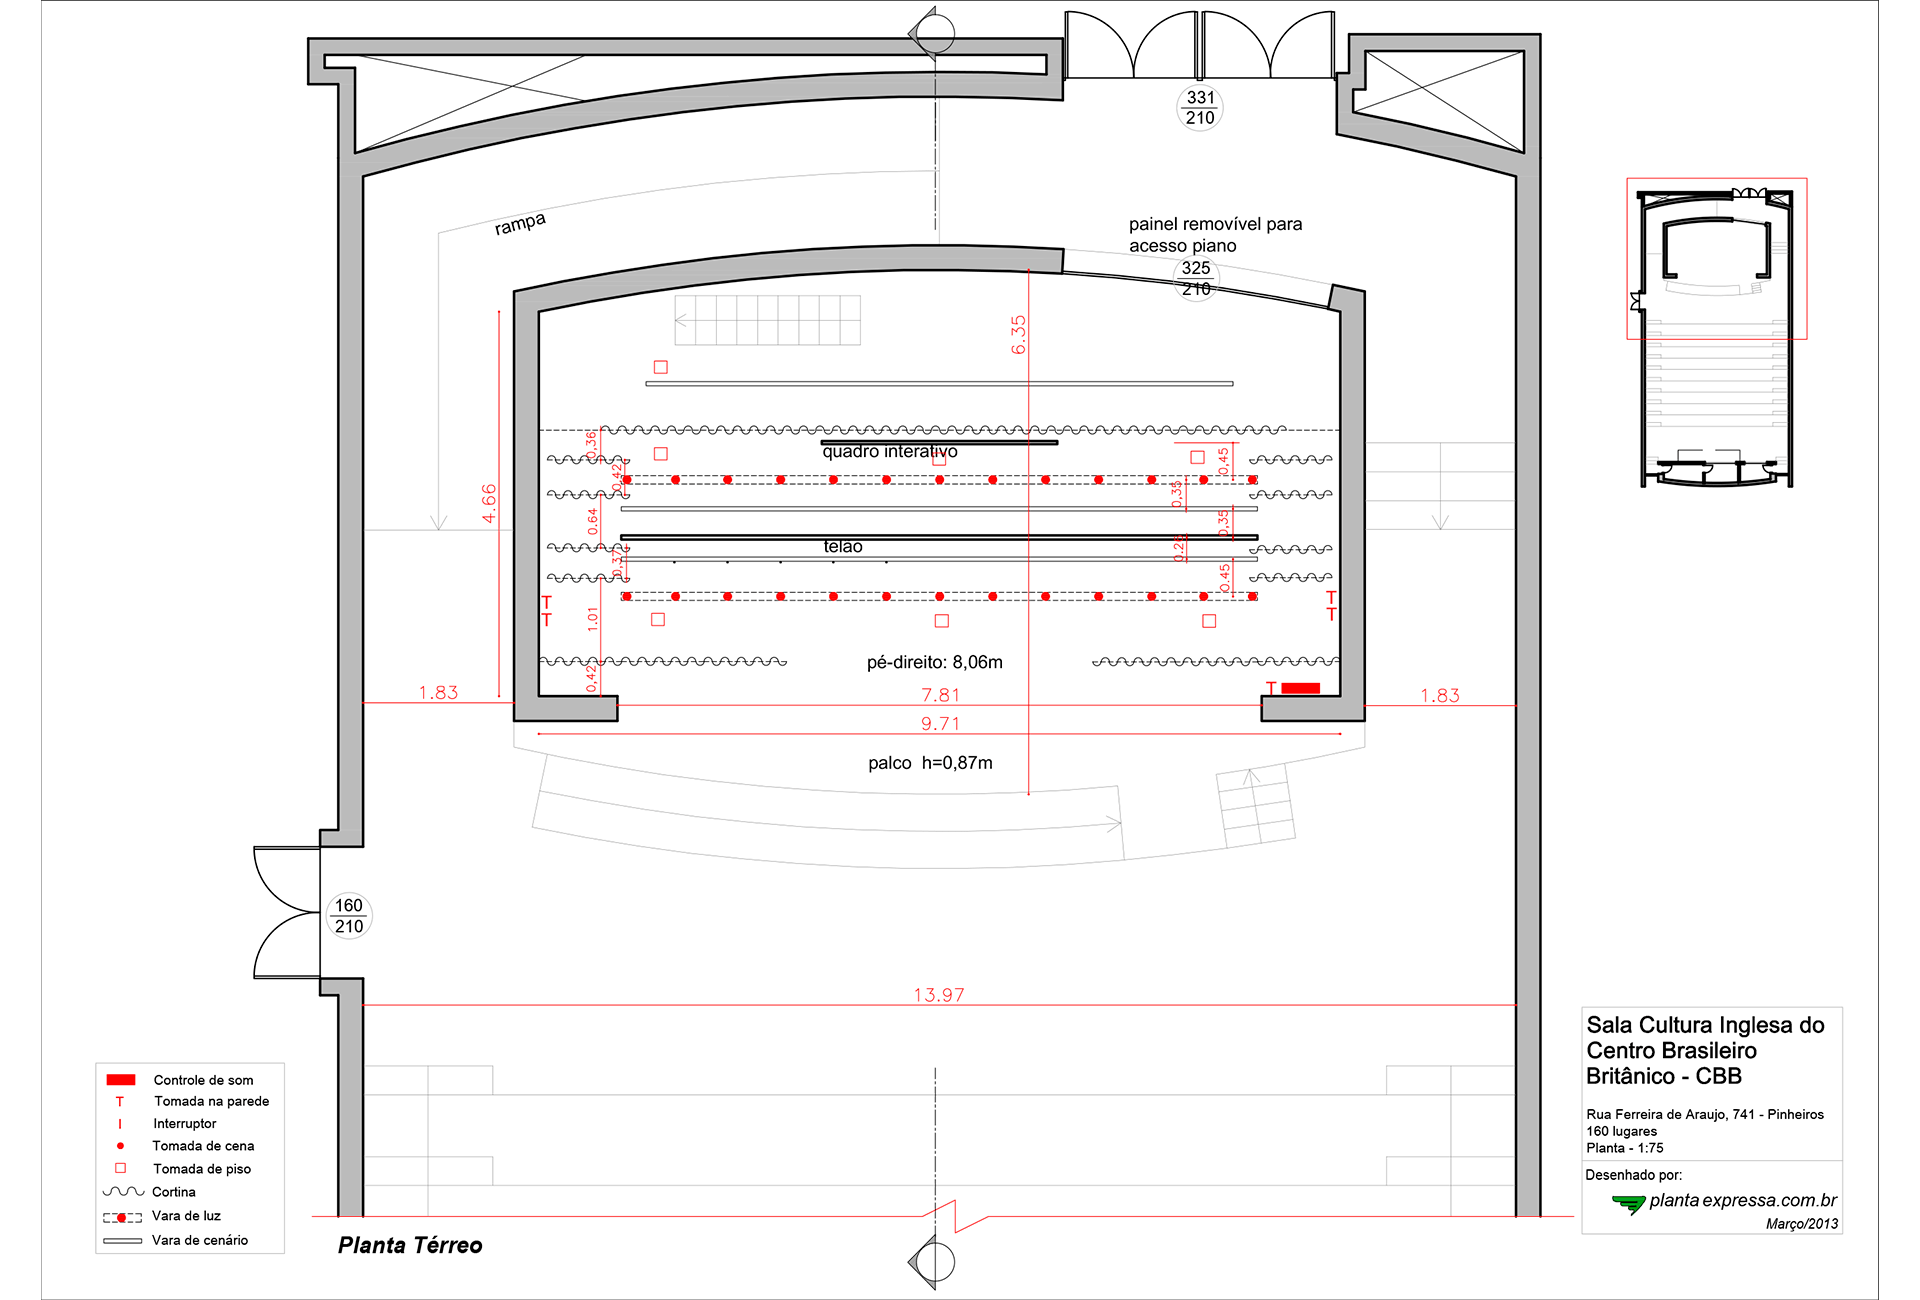 Auditorium floor plan